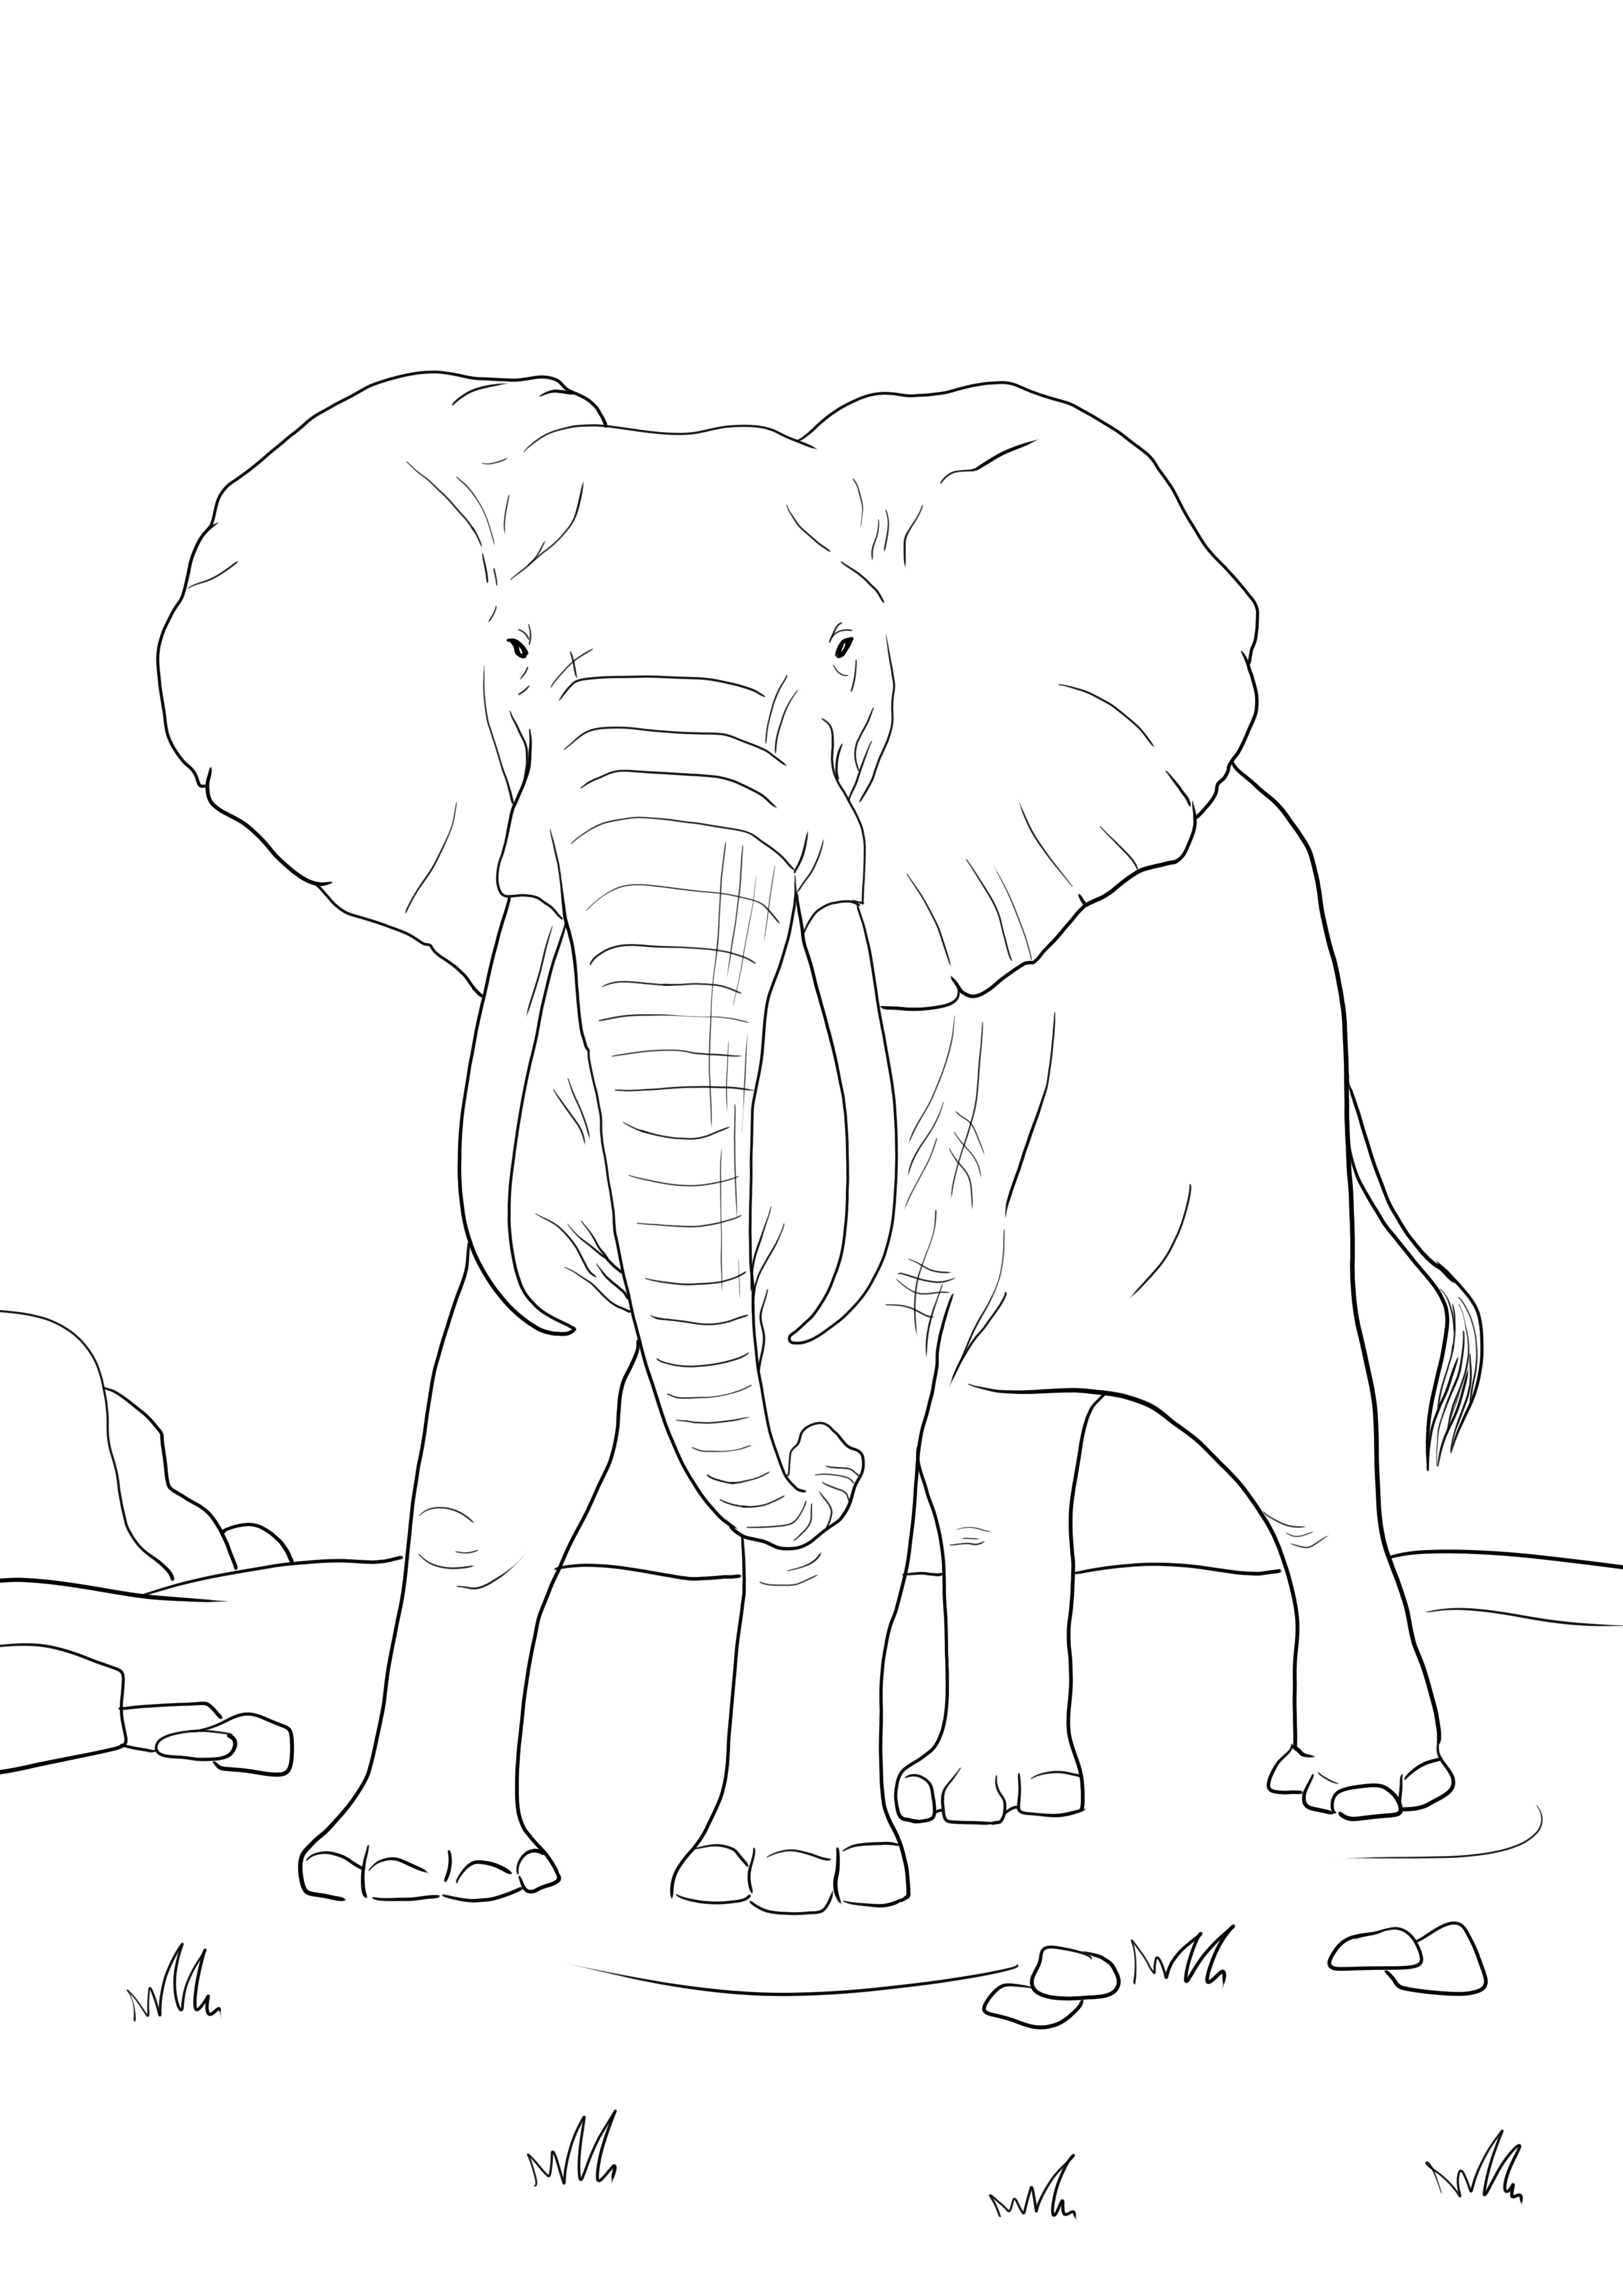 Egy afrikai elefánt egyszerű színező oldala ingyenesen letölthető vagy közvetlenül nyomtatható